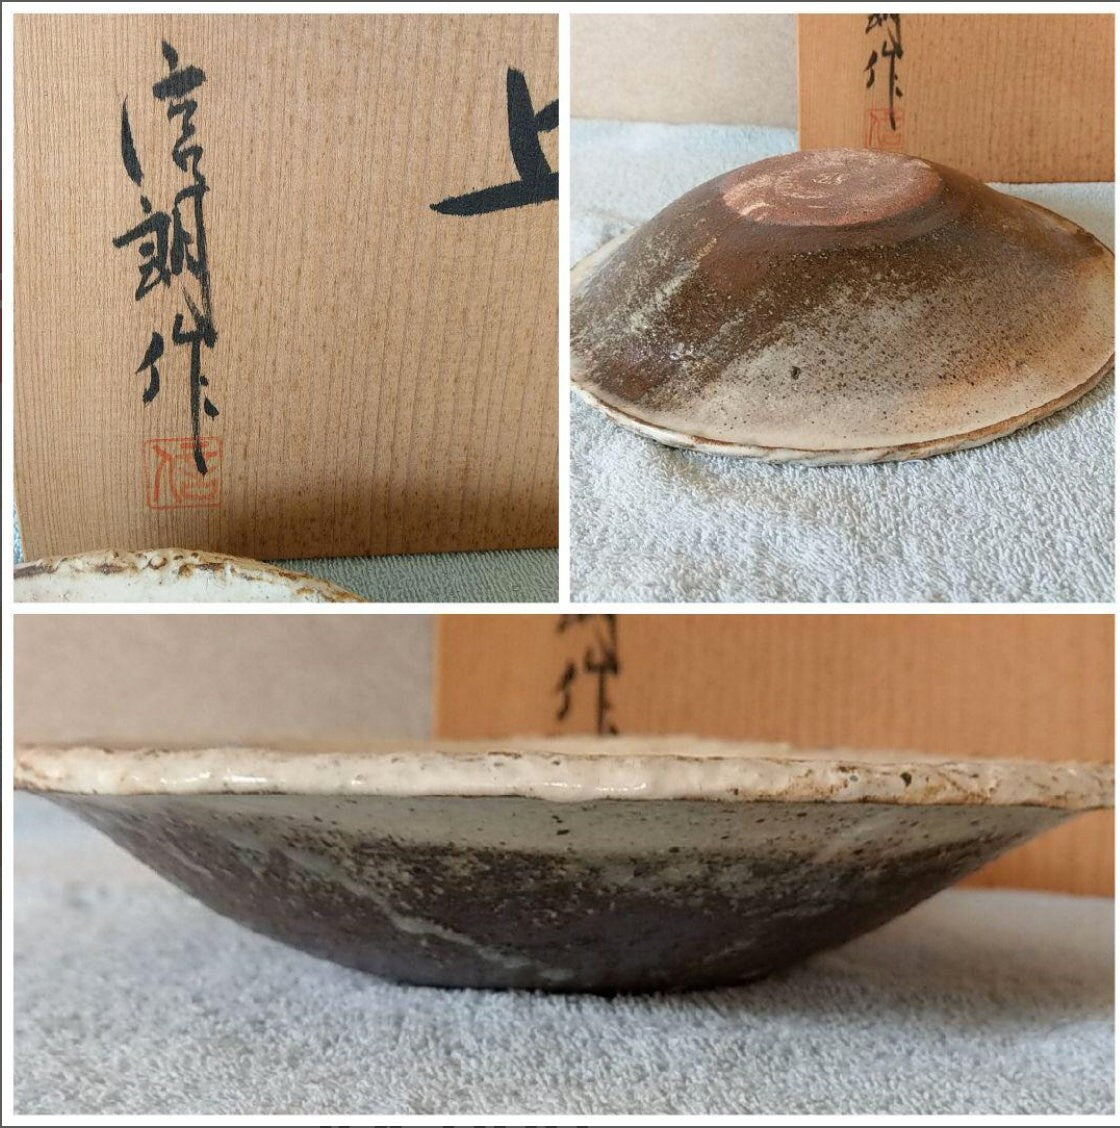 粉引、深皿、Japanese Ceramic Saucer, Shigaraki Ware, Kohiki, Fukazara, Furutani Pottery, Size 24cm diameter, comes with wooden protected box